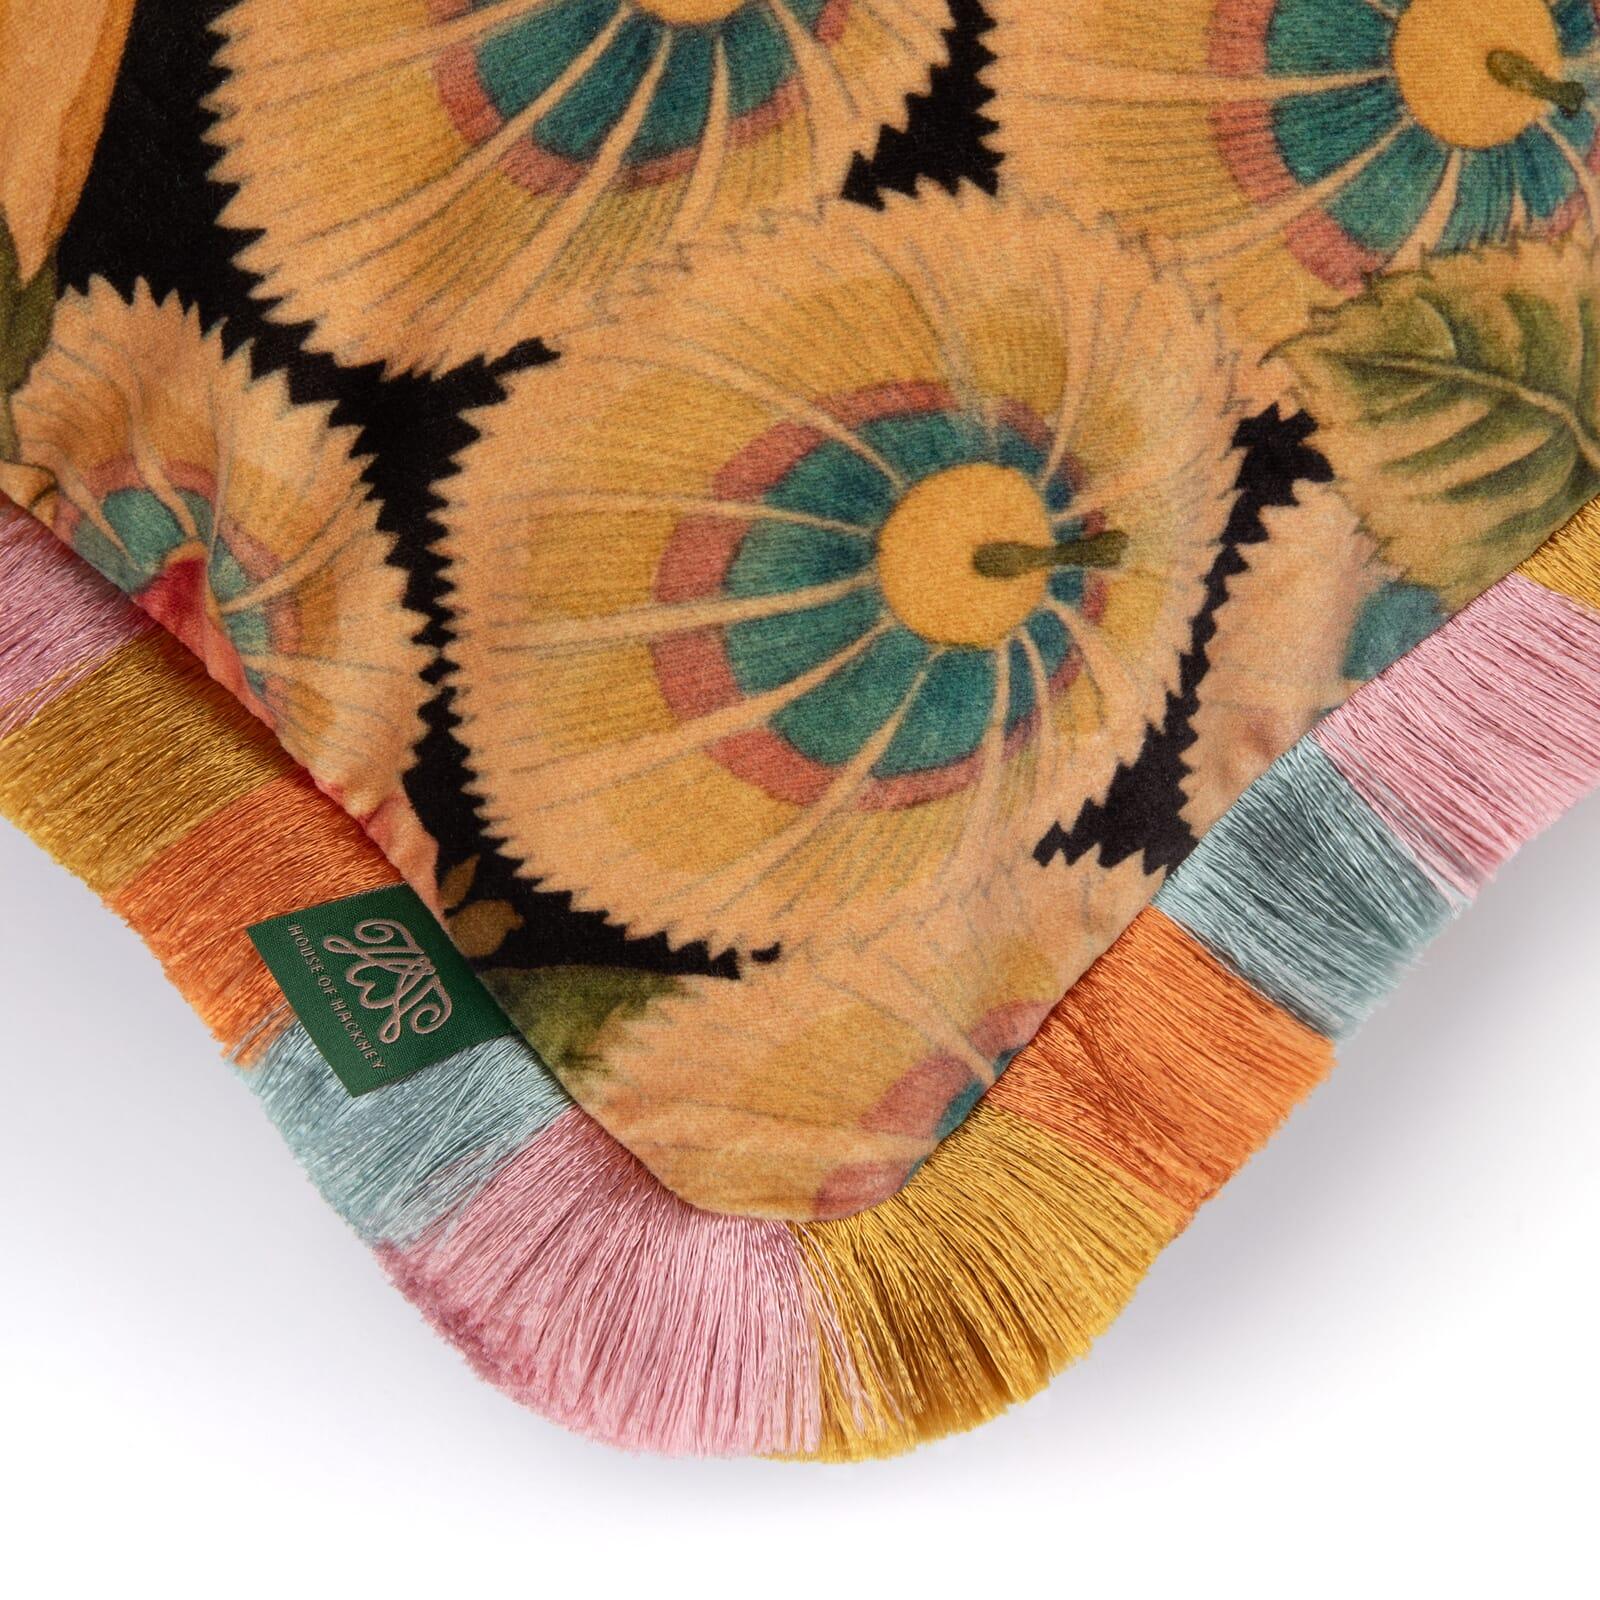 Succombez à l'art de l'amour avec AMATORIA, notre coussin floral inspiré des années 1930, qui présente une abondance de fleurs sur un fond de velours noir sombre et décadent. Cachées parmi les fleurs, vous trouverez nos poses passionnées échangeant